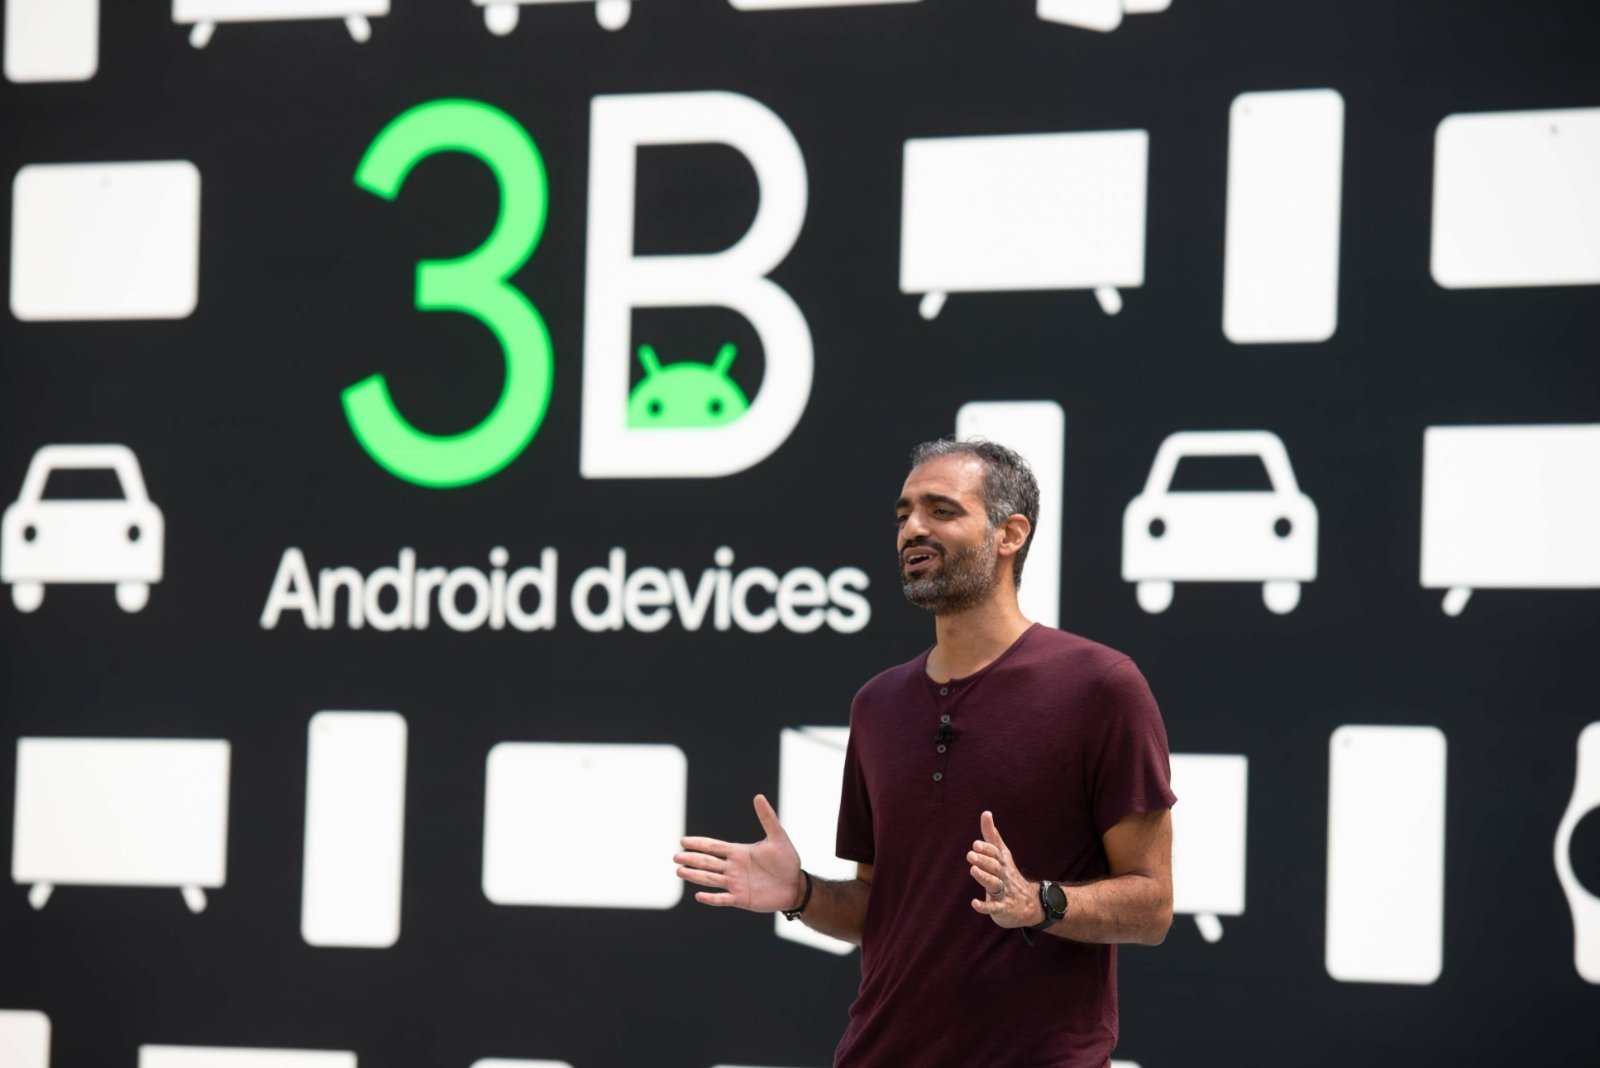 Android 3.000 millones dispositivos activos